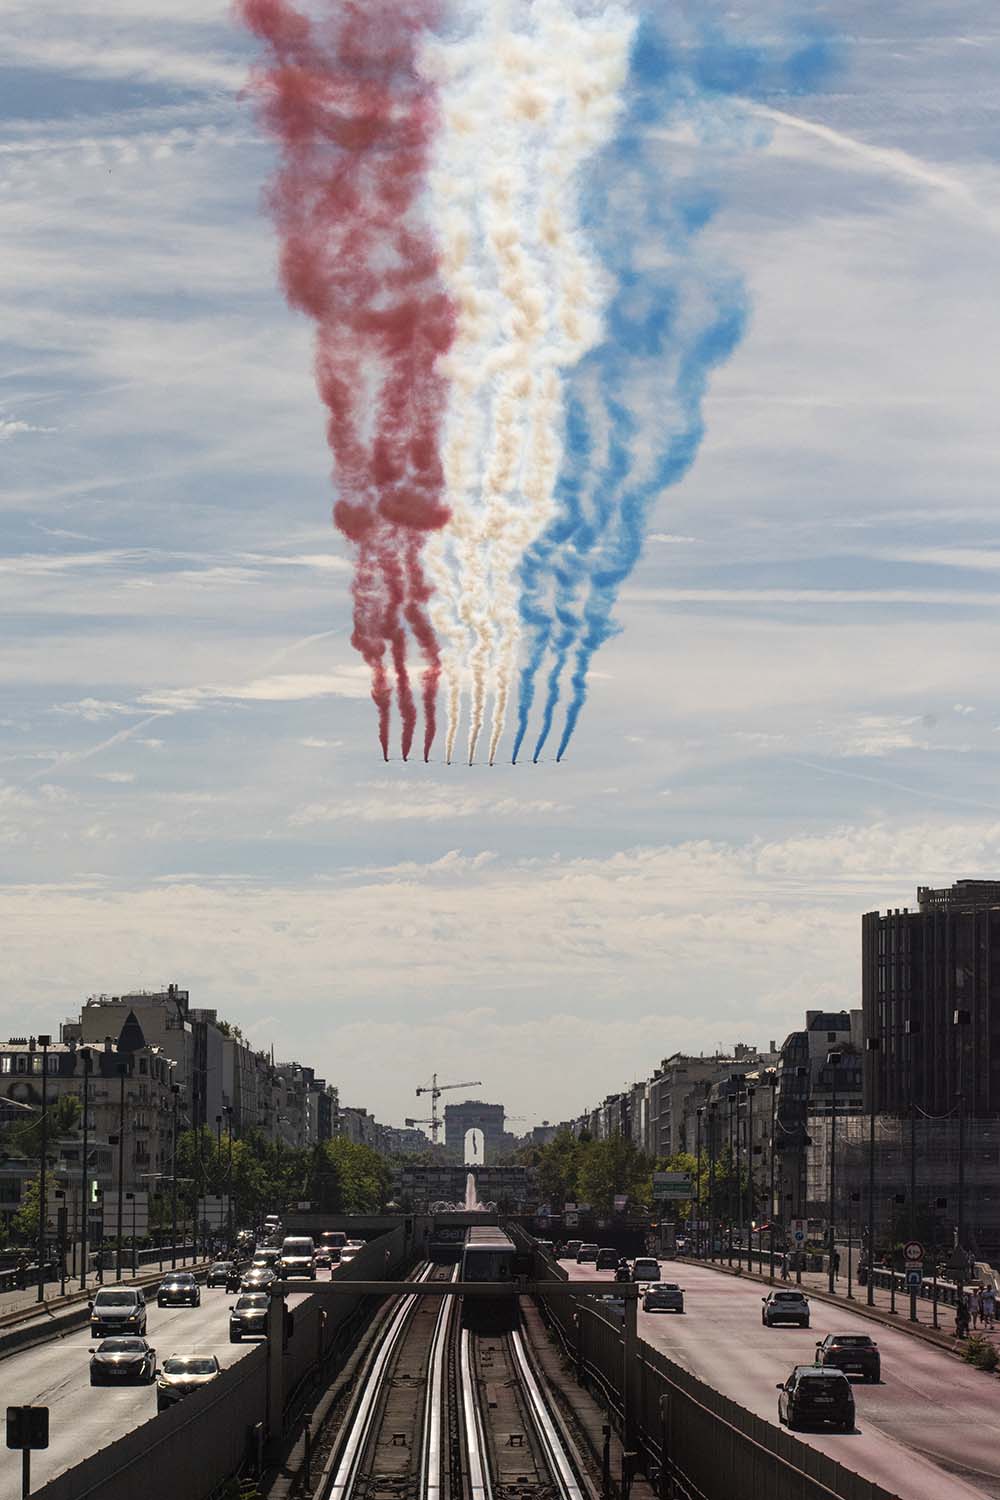 14 Juillet 2022, Bastille Day, France